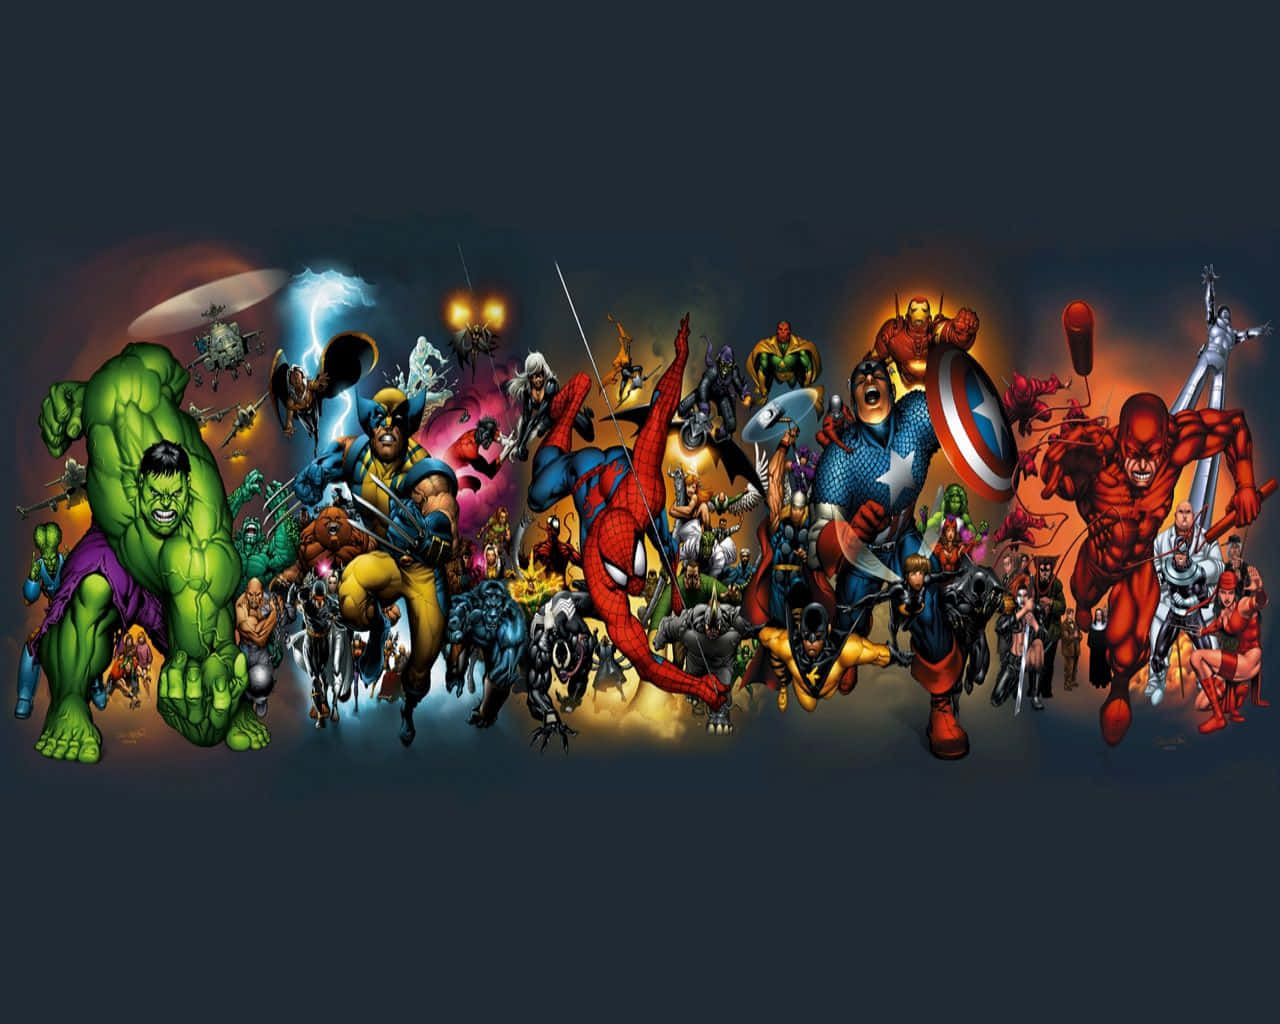 Elpoder Del Collage De Superhéroes De Los Vengadores Reunidos. Fondo de pantalla